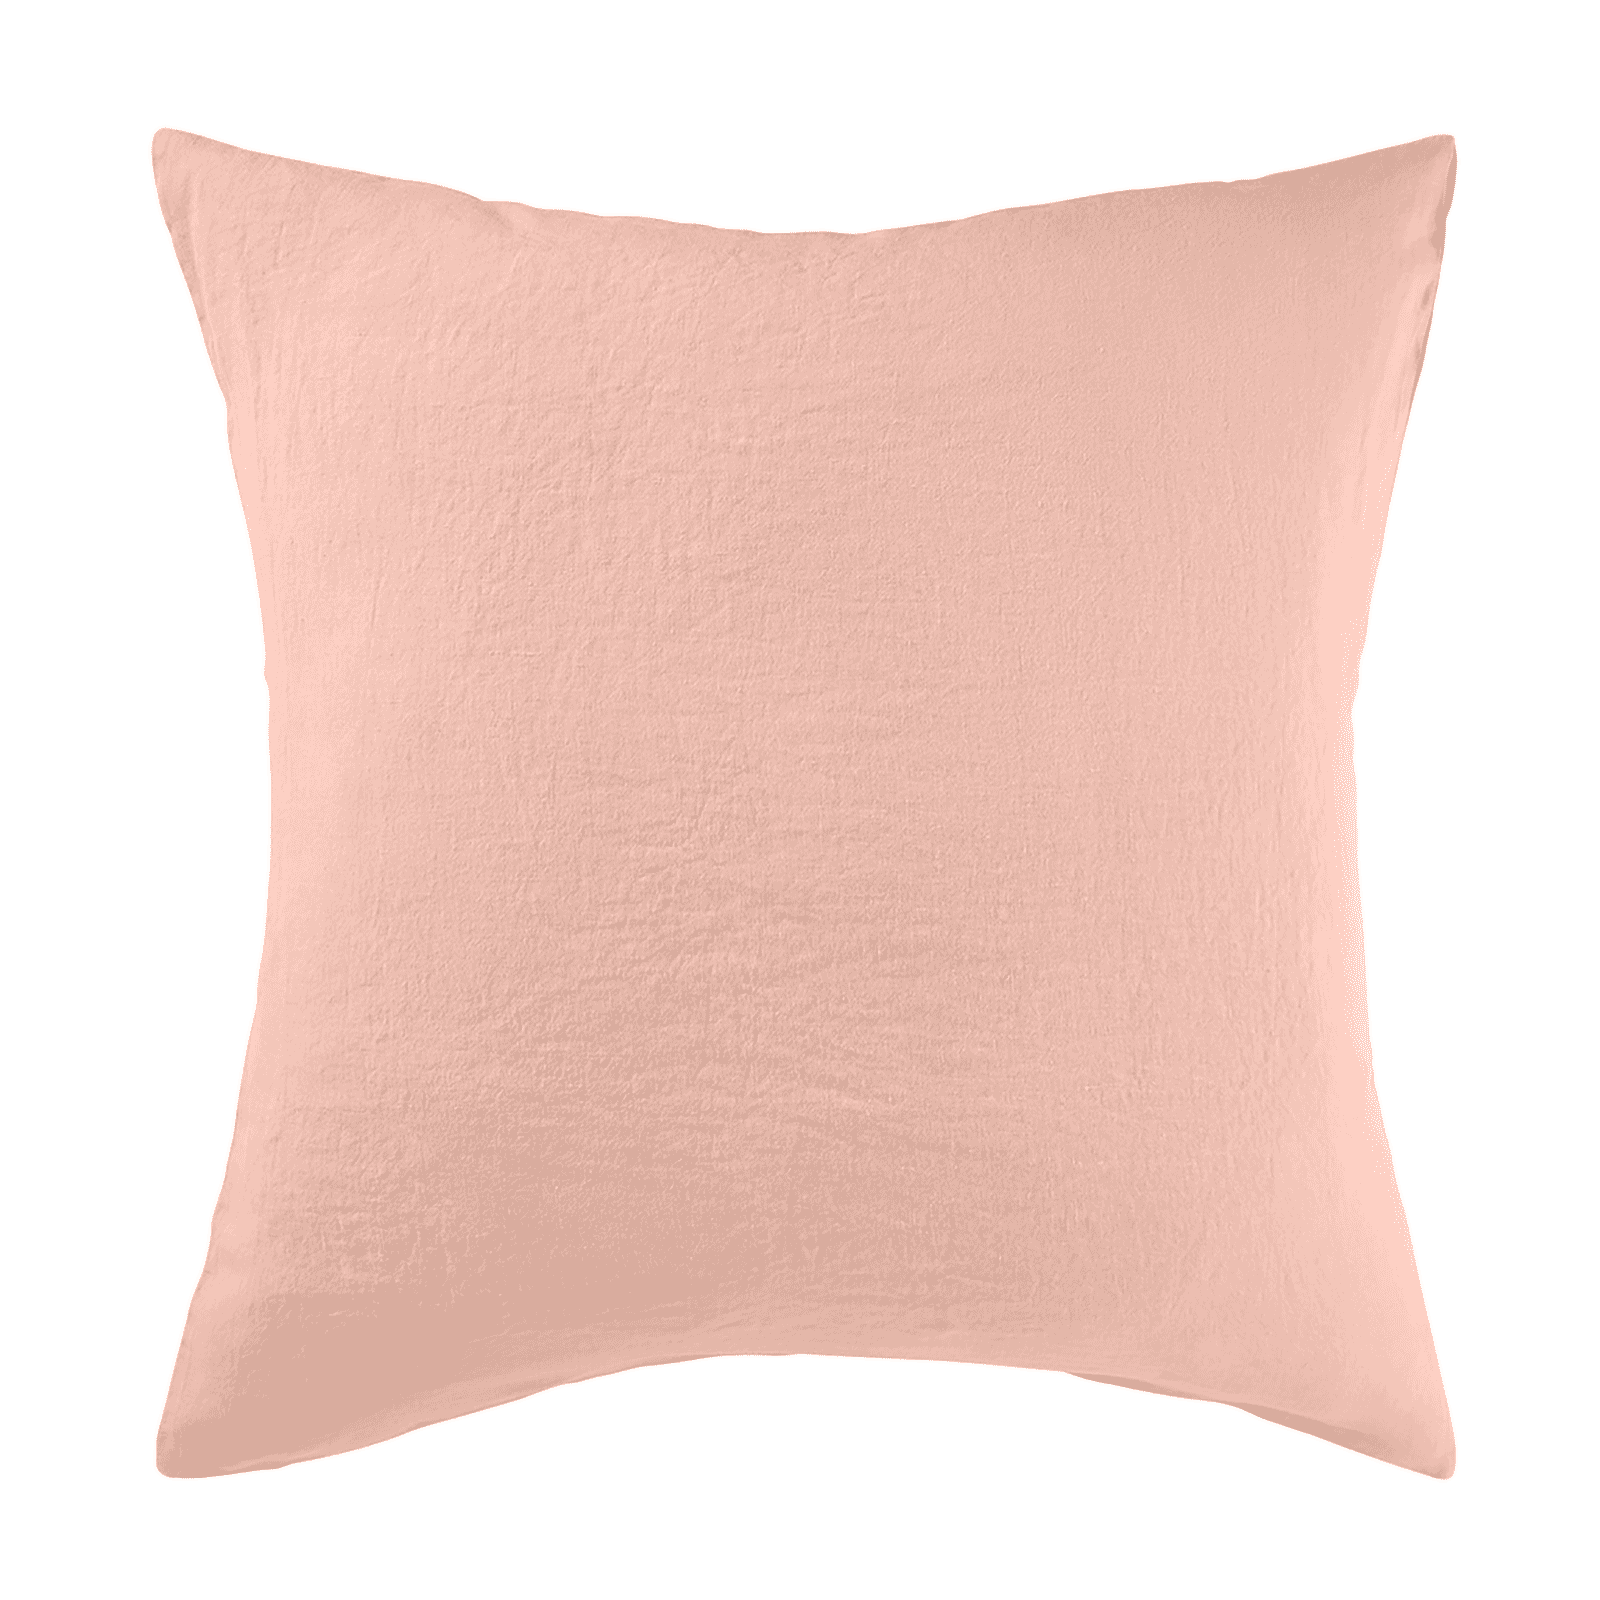 Pillowcase Linen - Nude